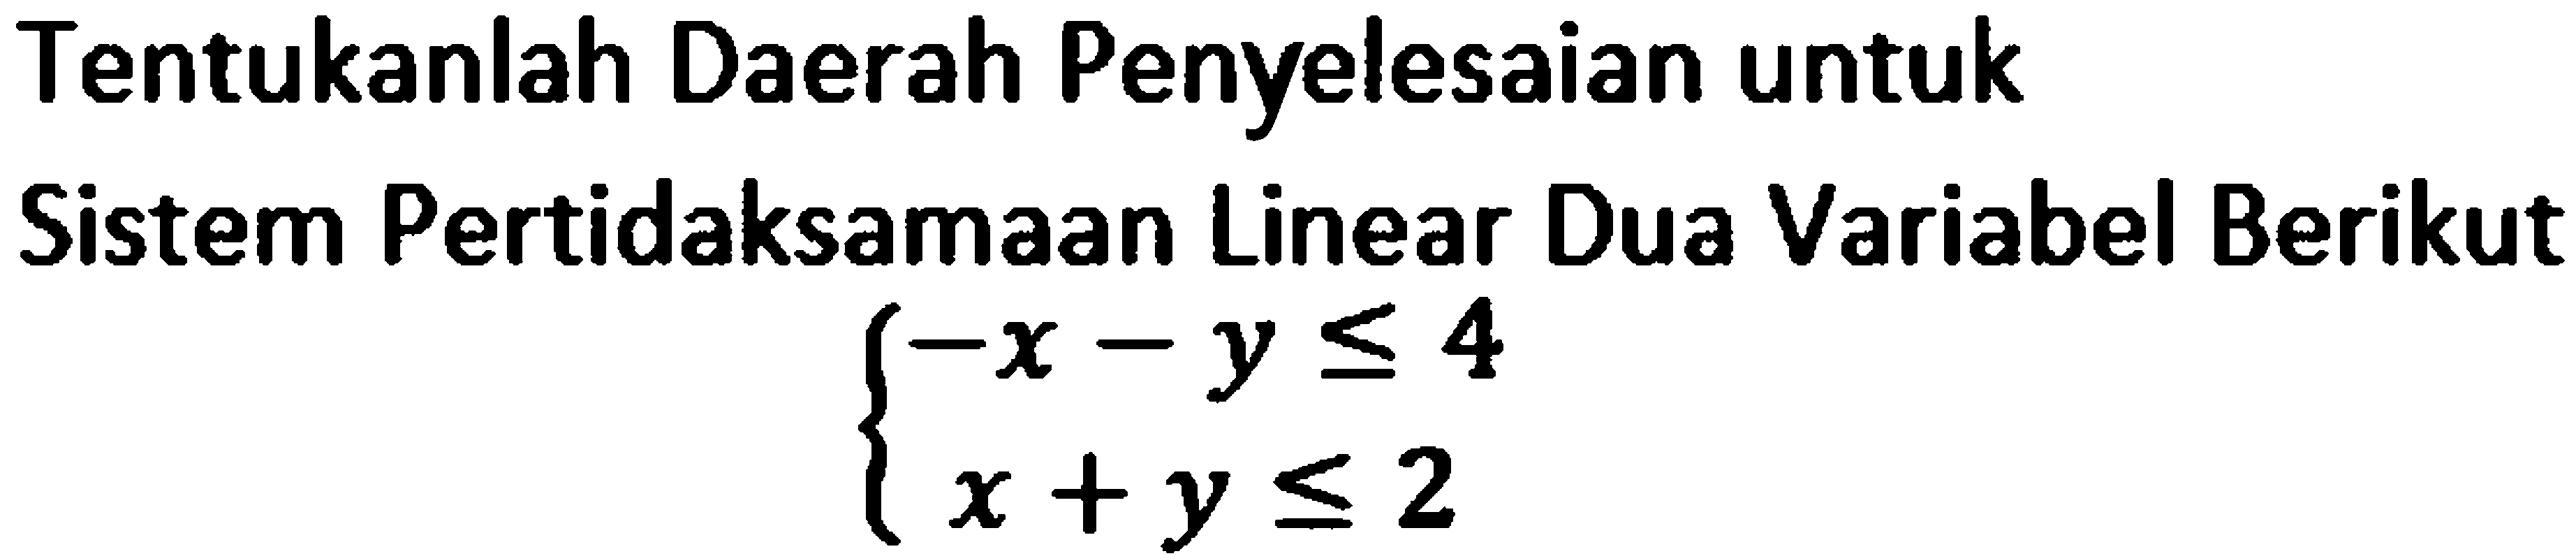 Tentukanlah Daerah Penyelesaian untuk Sistem Pertidaksamaan Linear Dua Variabel Berikut -x-y<=4 x+y<=2